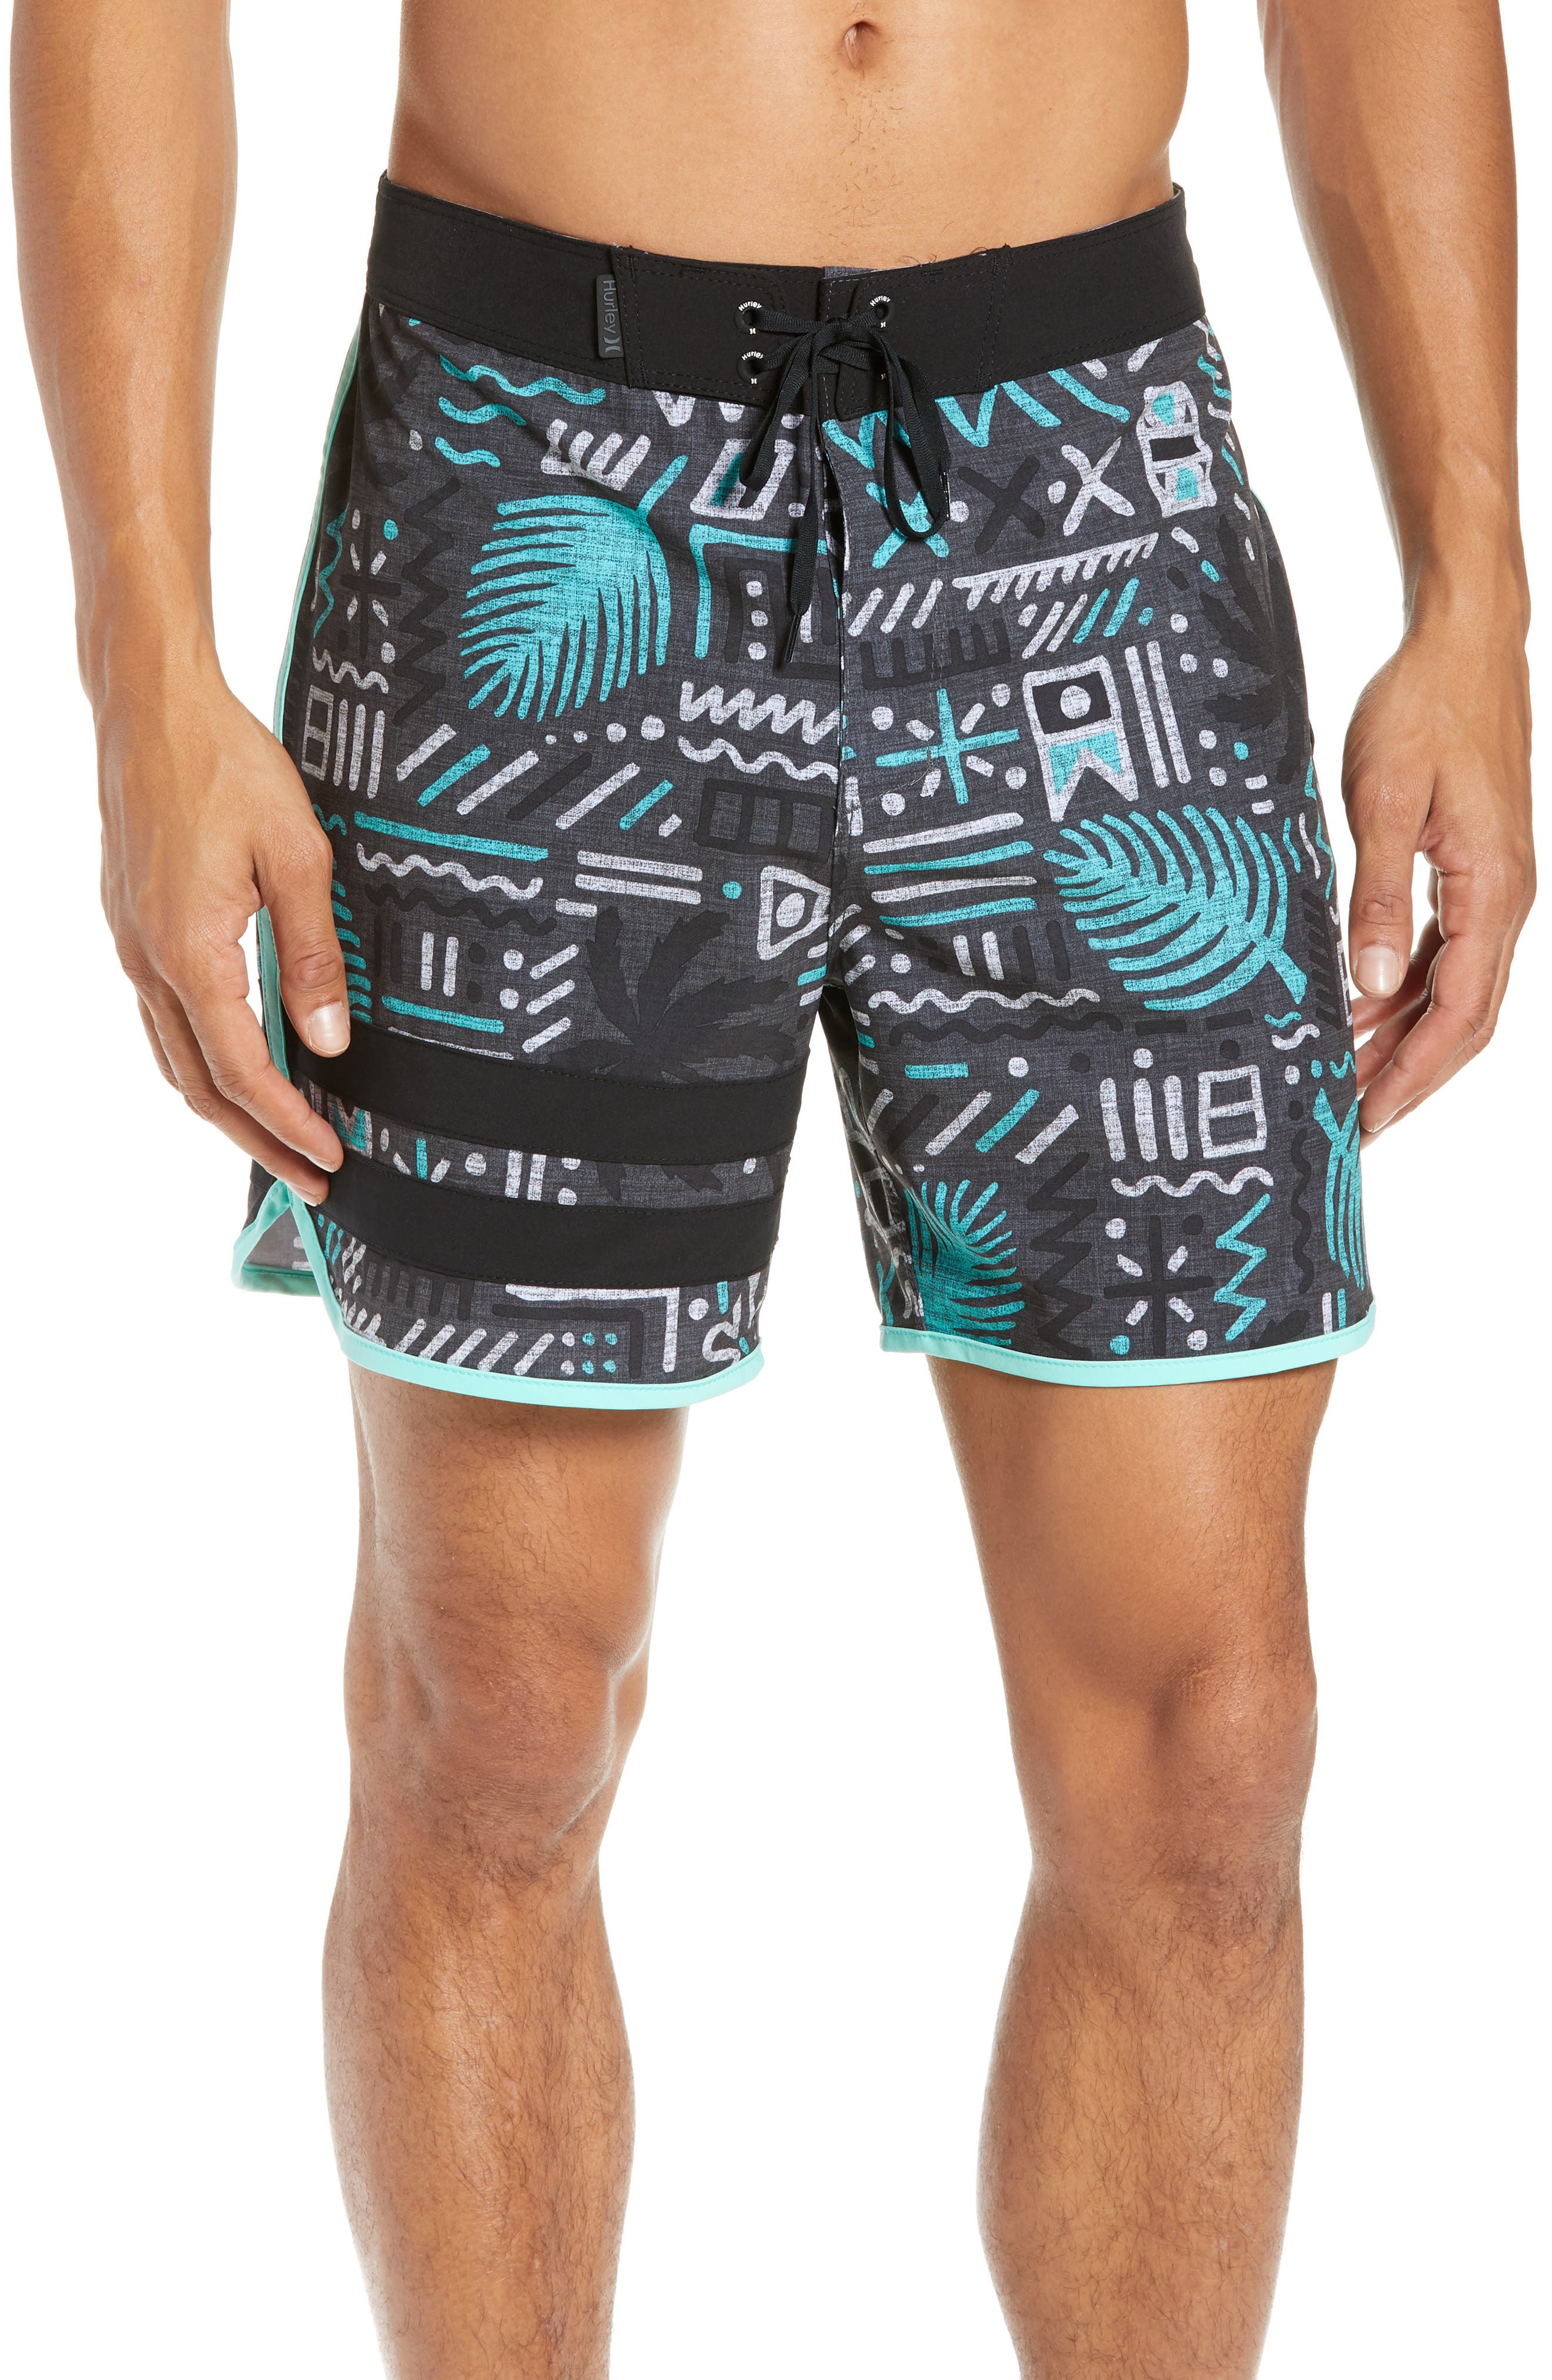 Hurley - Men's Swimwear and Beachwear